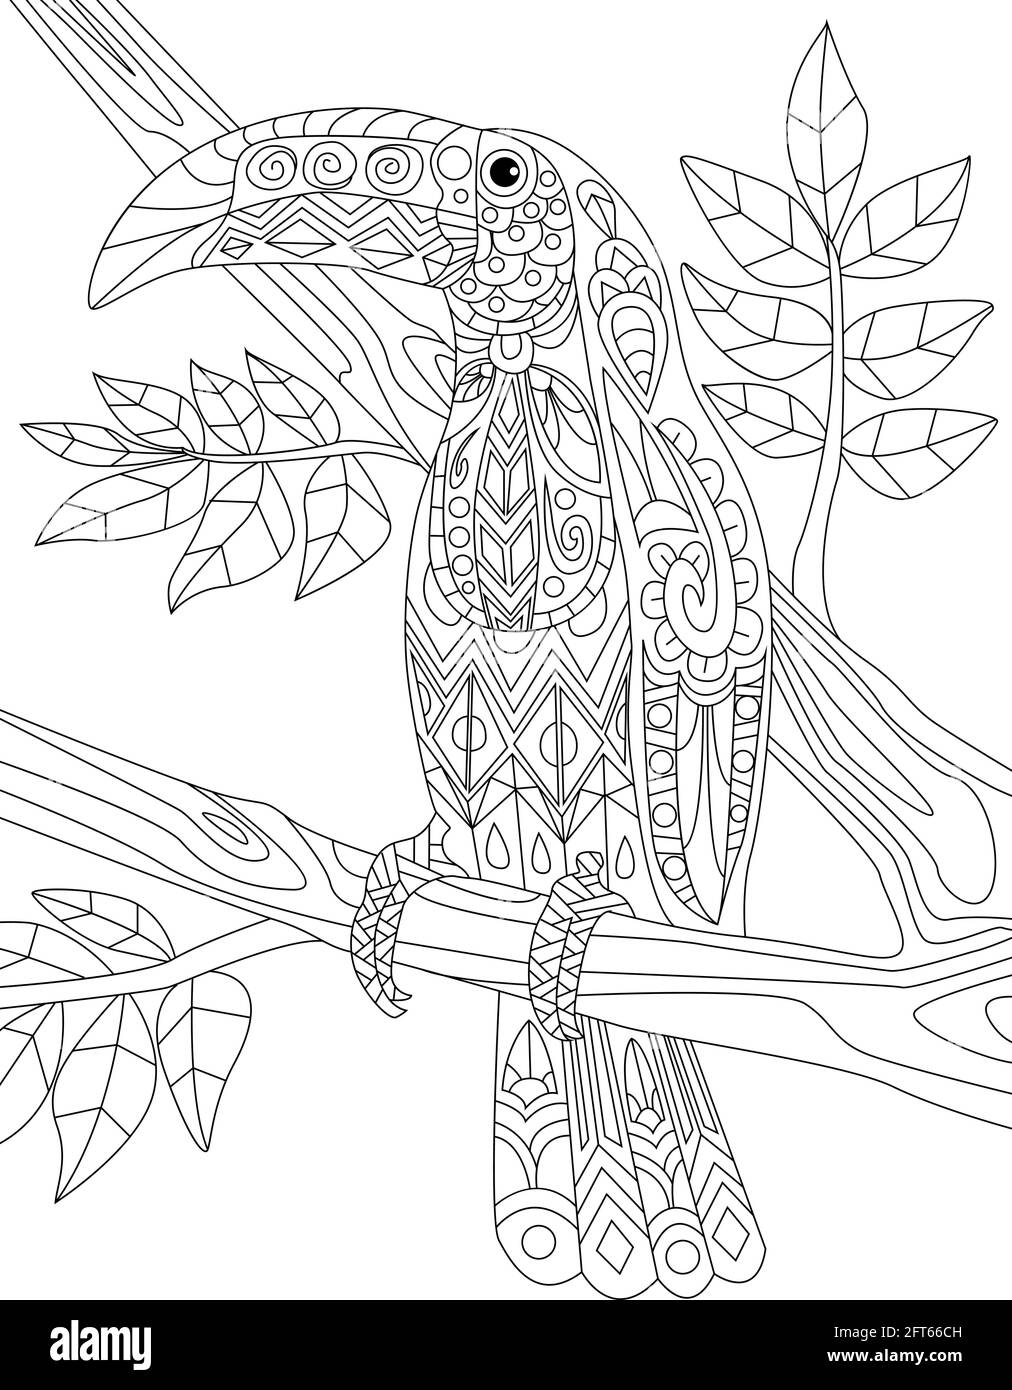 Tropische Vögel Doodles Auf Bäumen, Handzeichnung Pelikan, Linienbild Flamingo, Baum-Vektor-Illustration, Wild Life Line Design, Outline Forest Design Stock Vektor